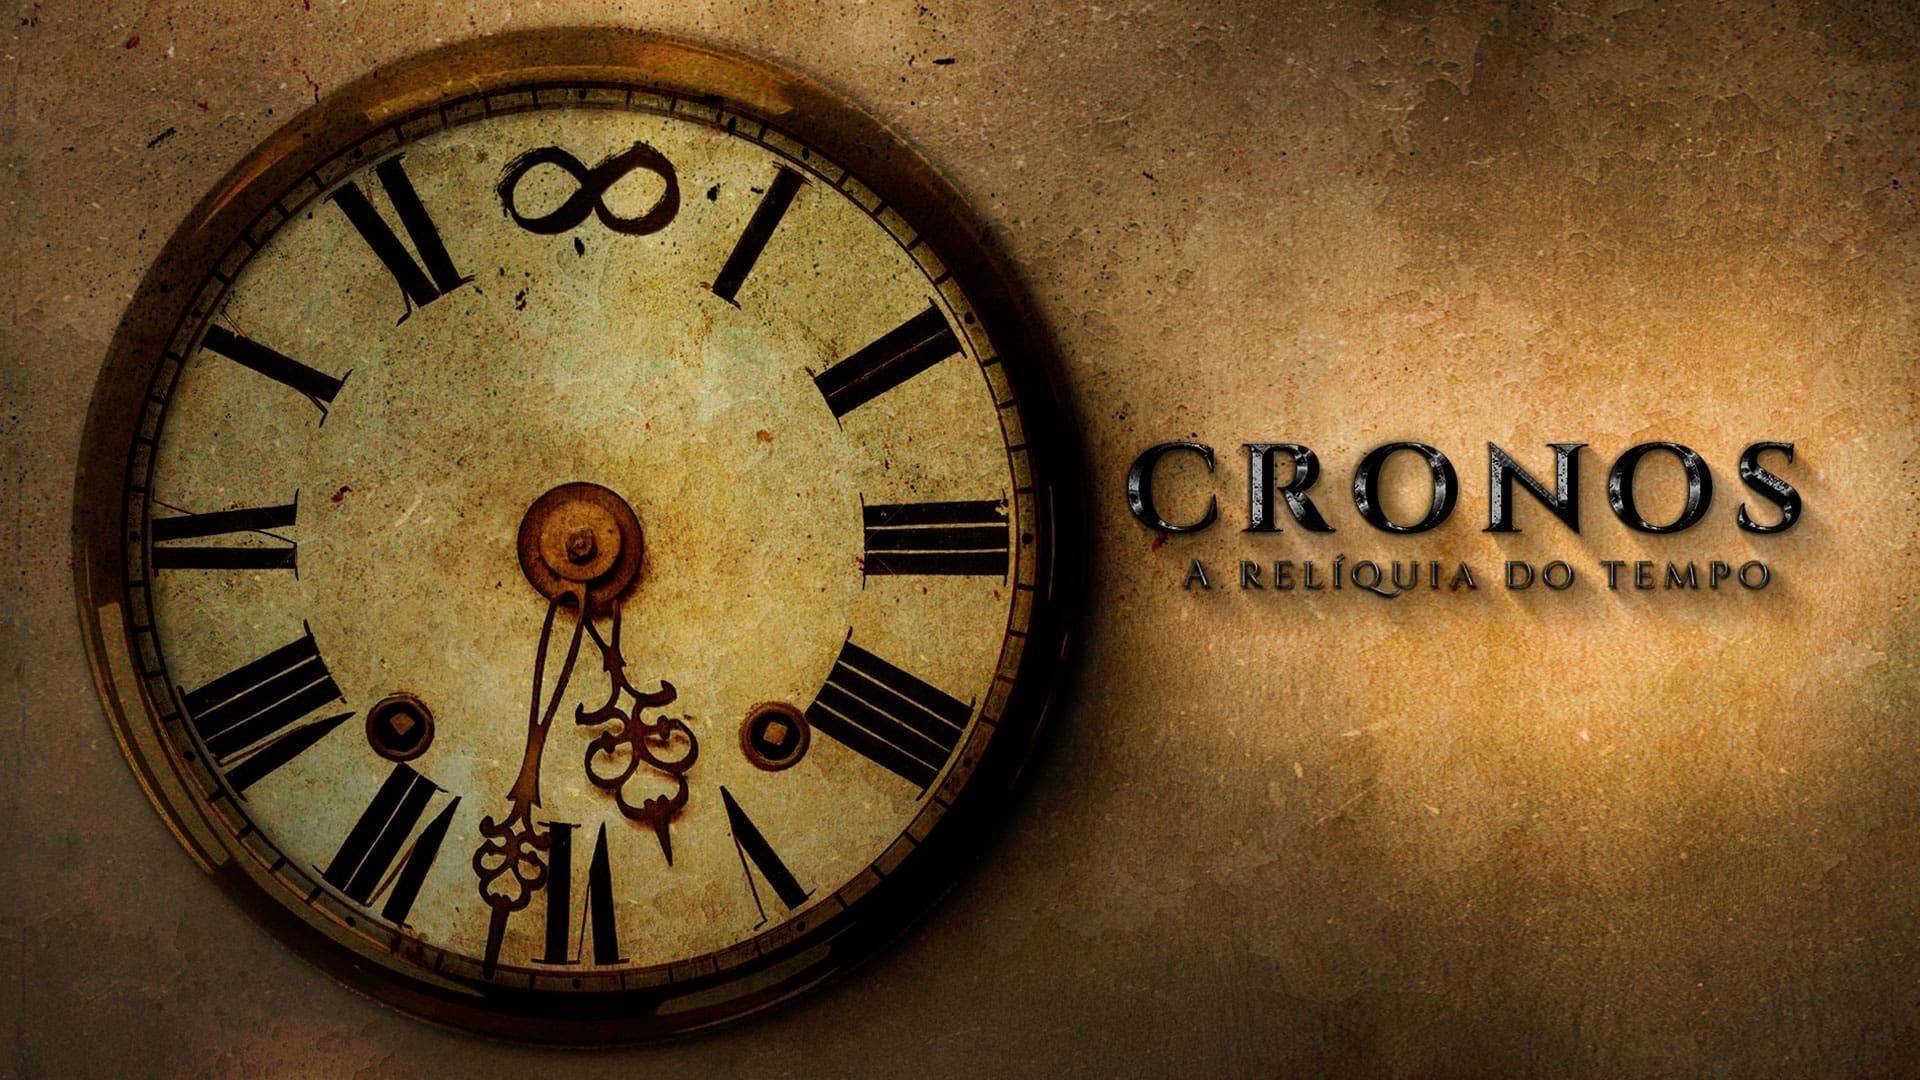 Cronos - A Relíquia do Tempo backdrop